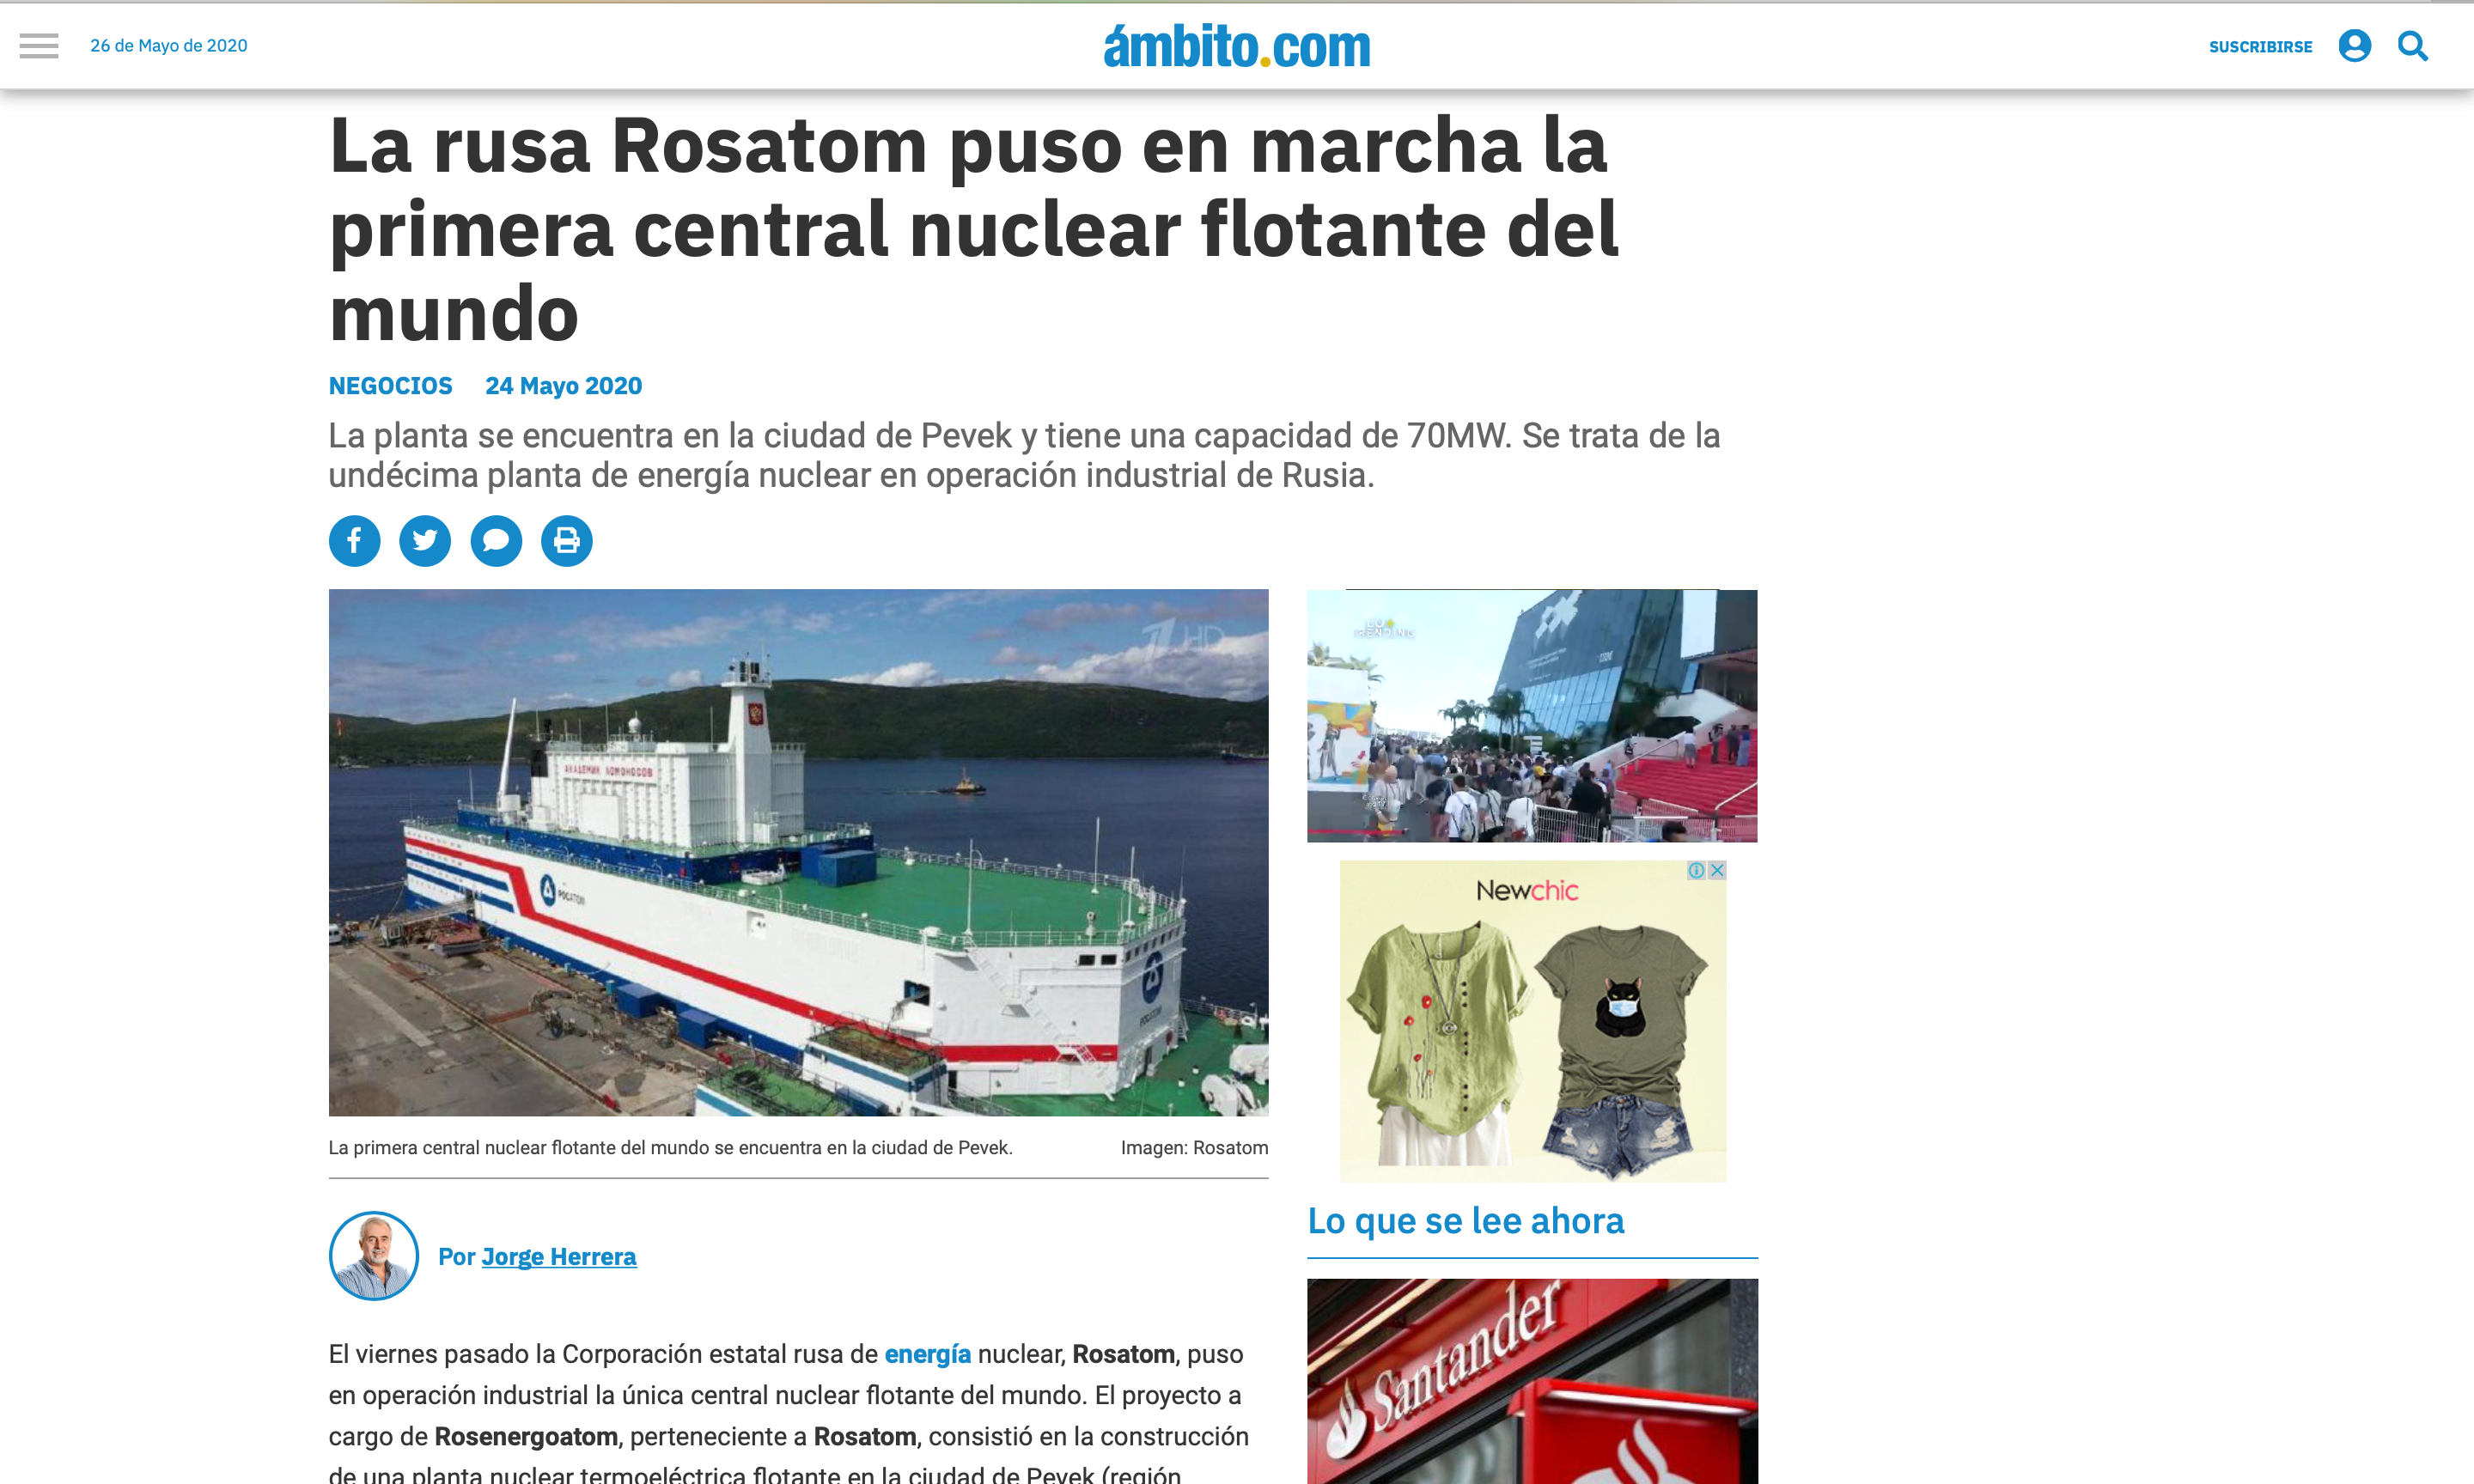 La rusa Rosatom puso en marcha la primera central nuclear flotante del mundo